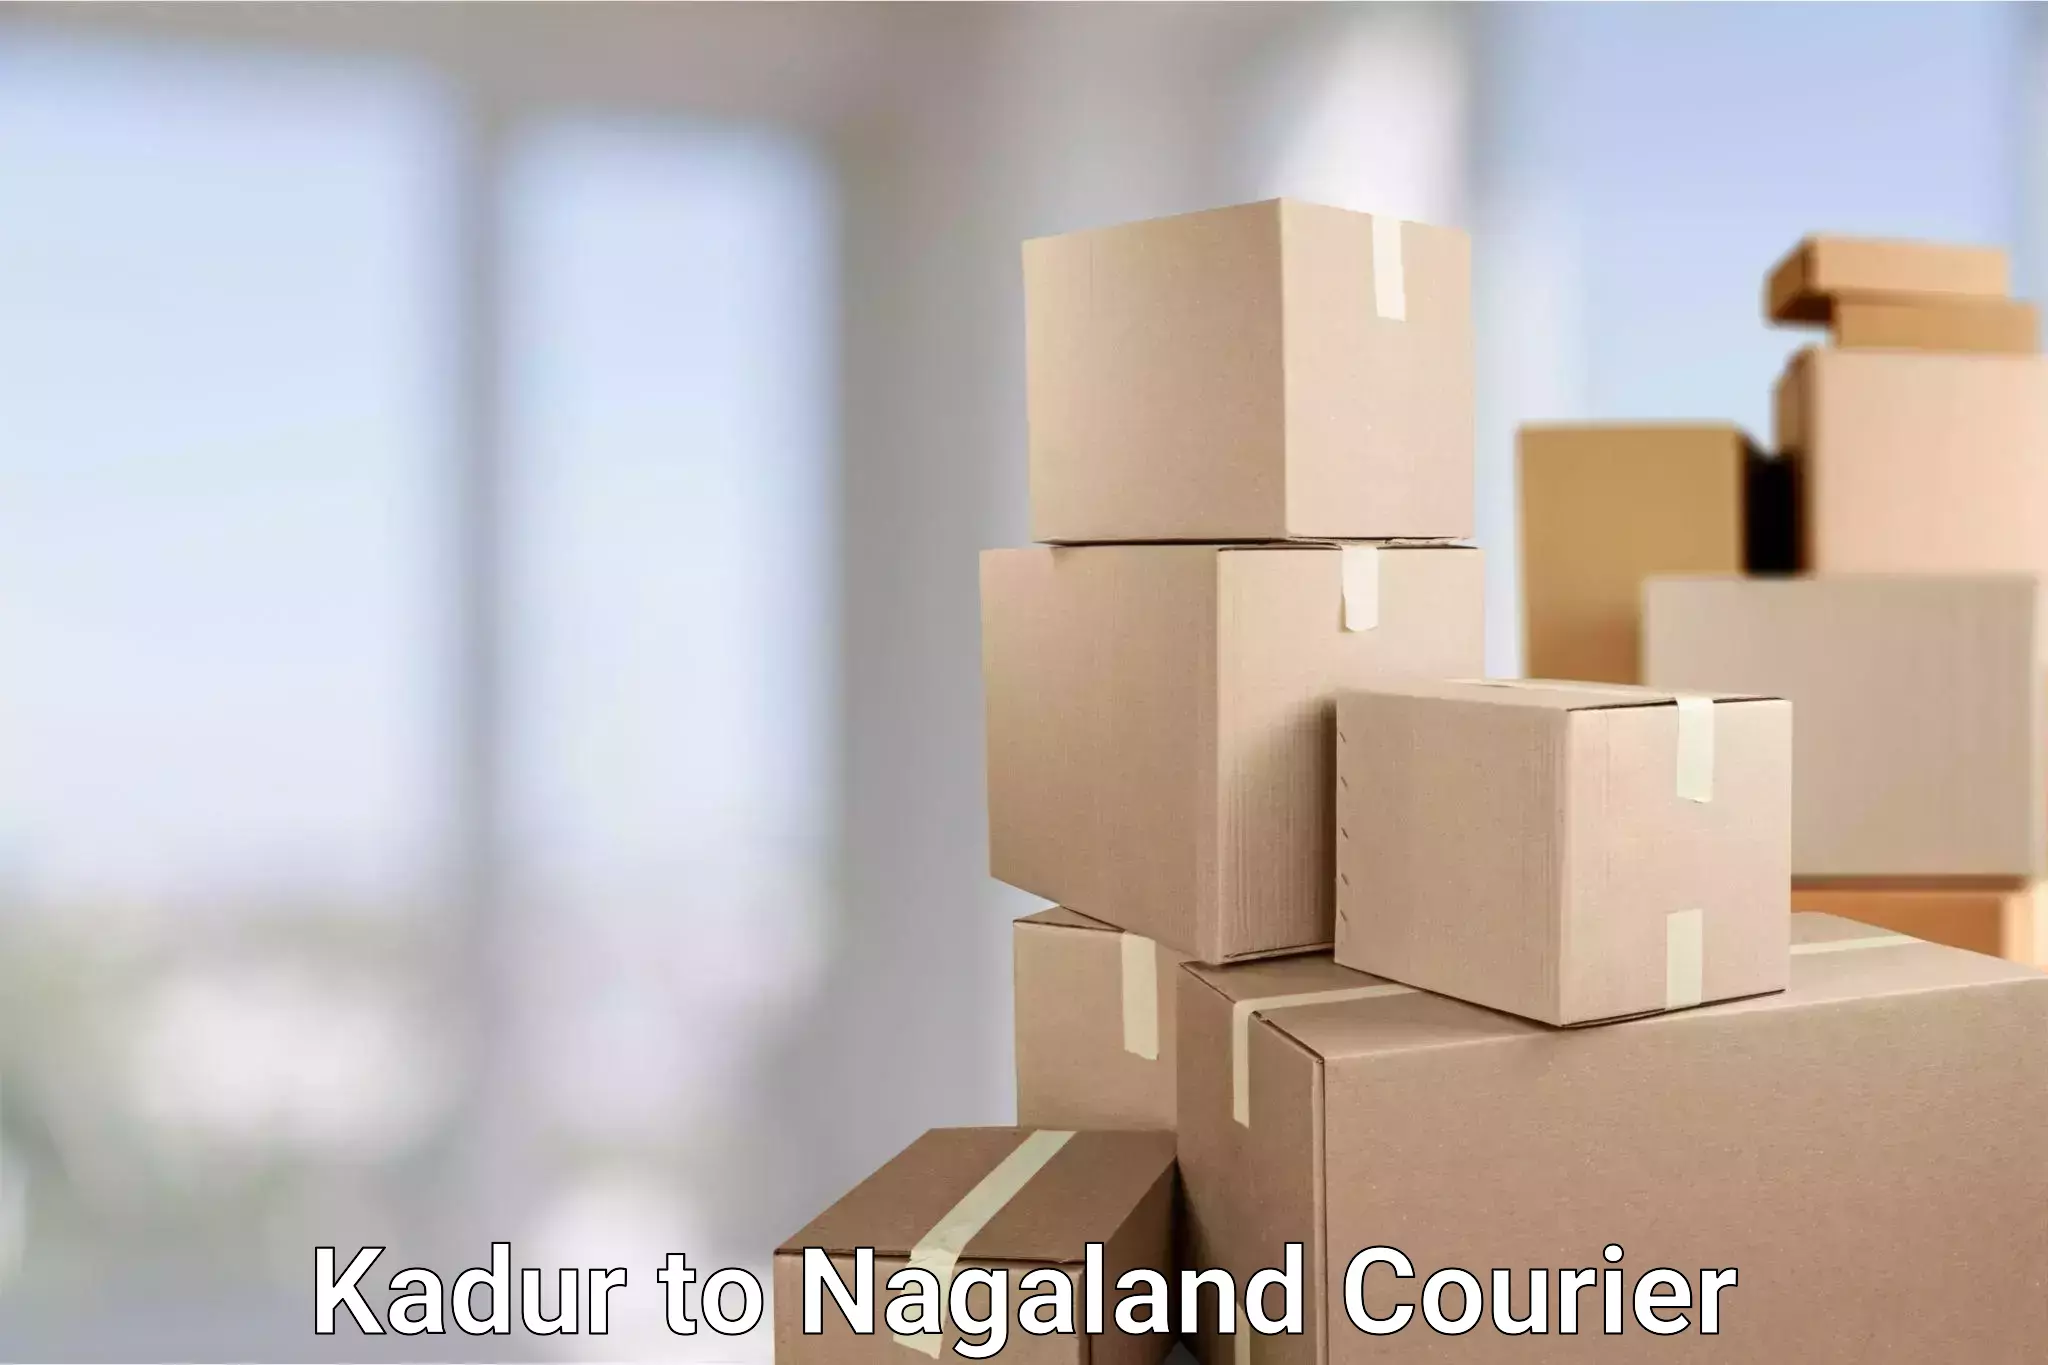 High-efficiency logistics Kadur to NIT Nagaland